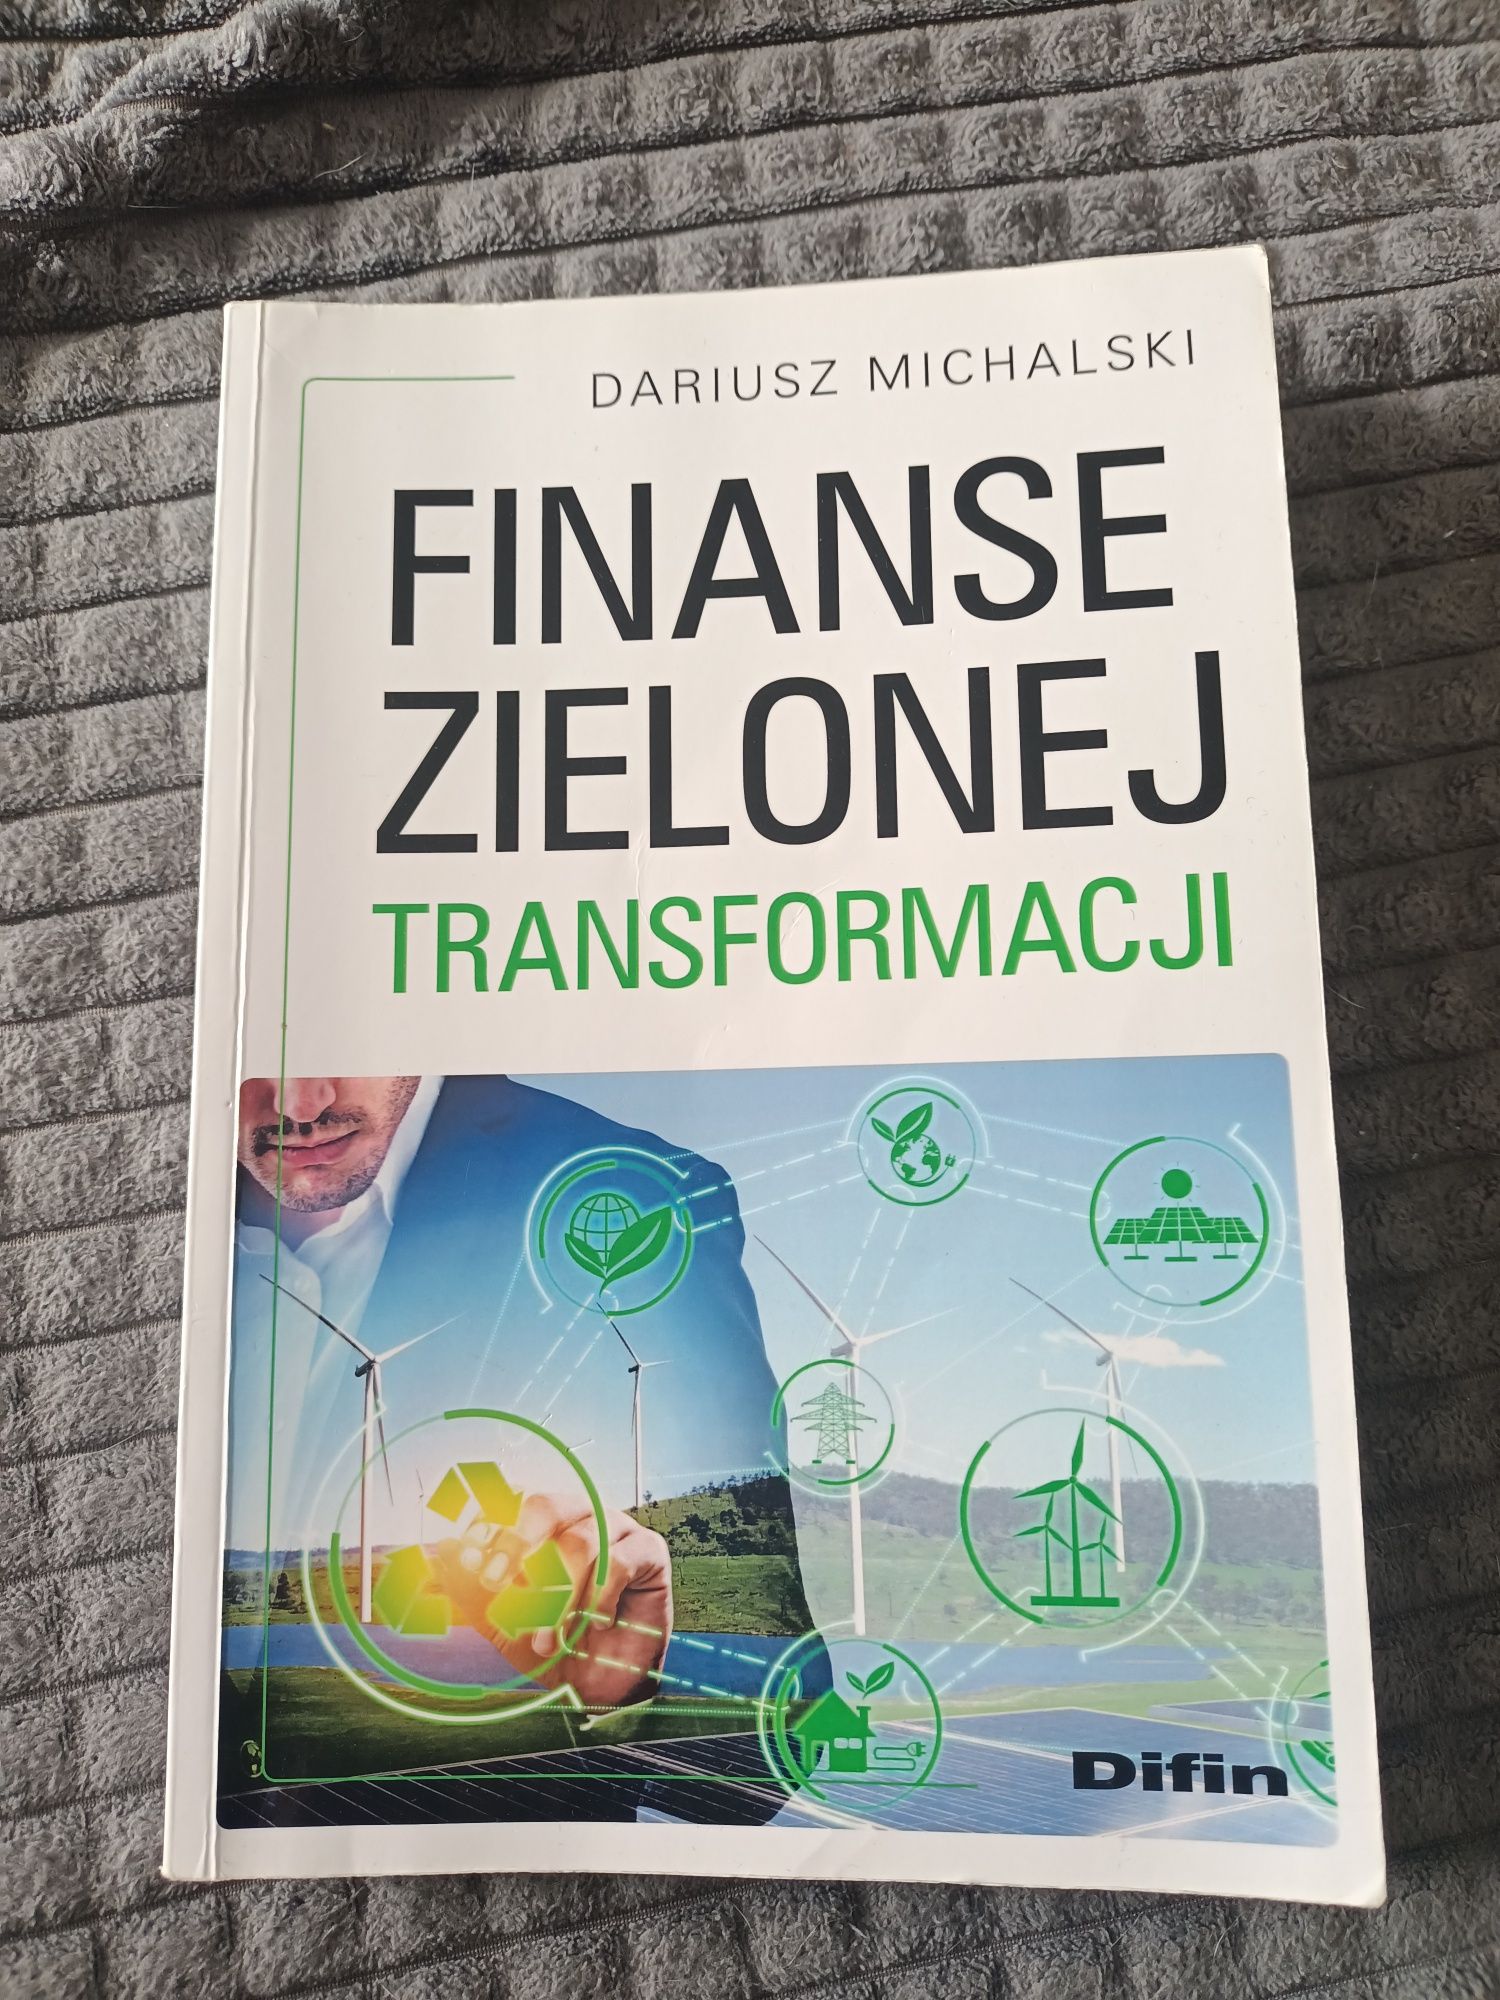 Książka "Finanse zielonej transformacji" Dariusz Michalski